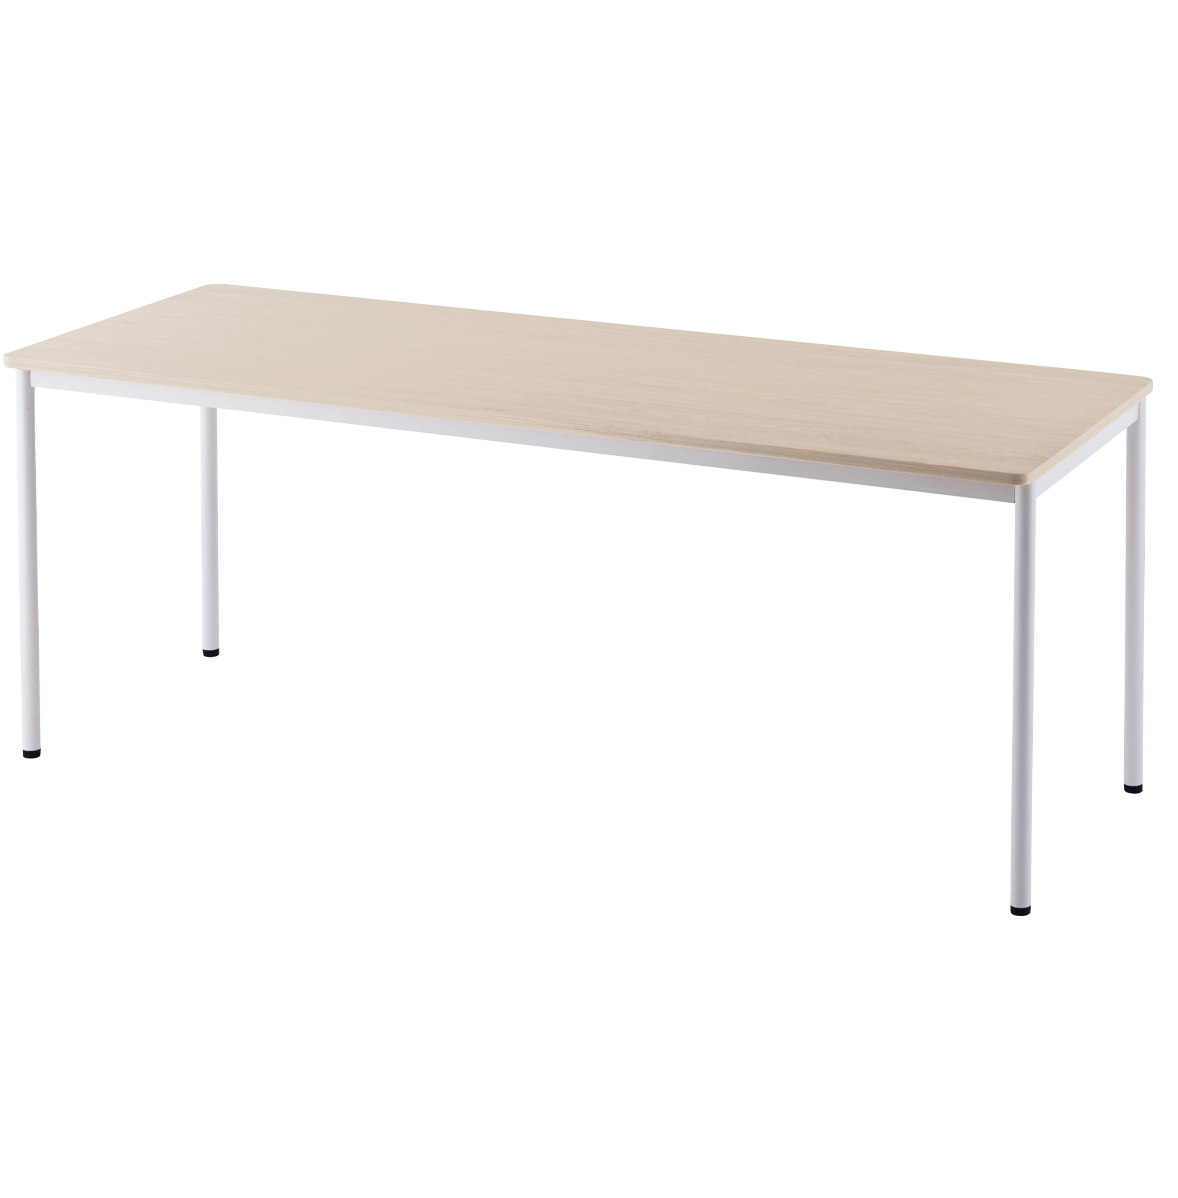 シンプルテーブル ラディーシリーズ 幅1800 奥行700 高さ700 RY-SPT1870 通販 会議用テーブル・会議机・長机  オフィス家具のカグクロ